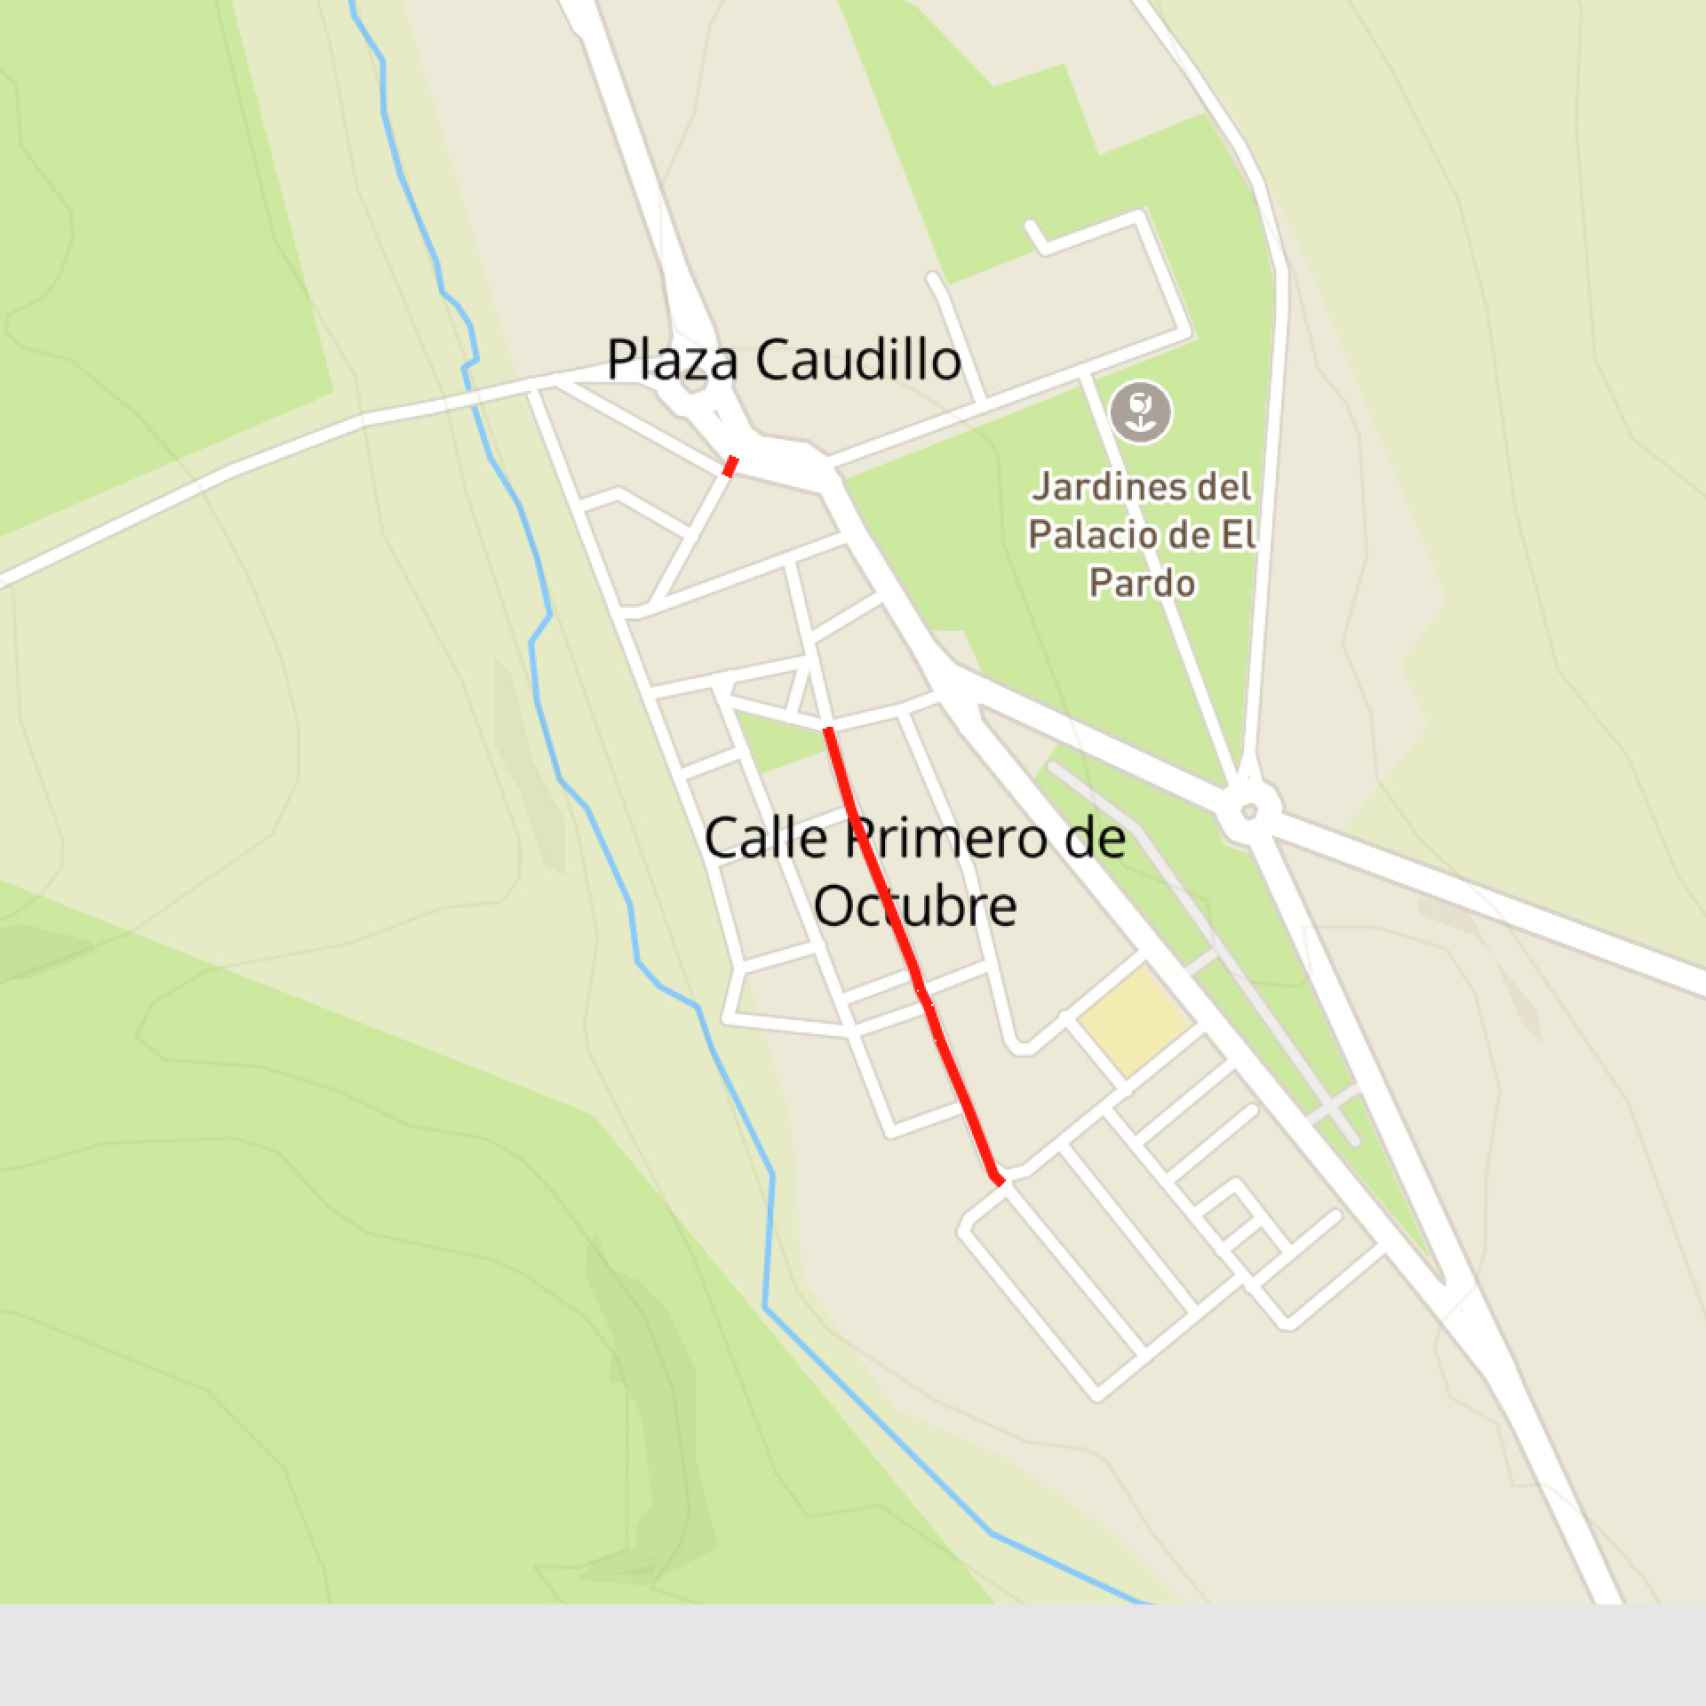 Mapa de El Pardo con las dos calles anuladas.